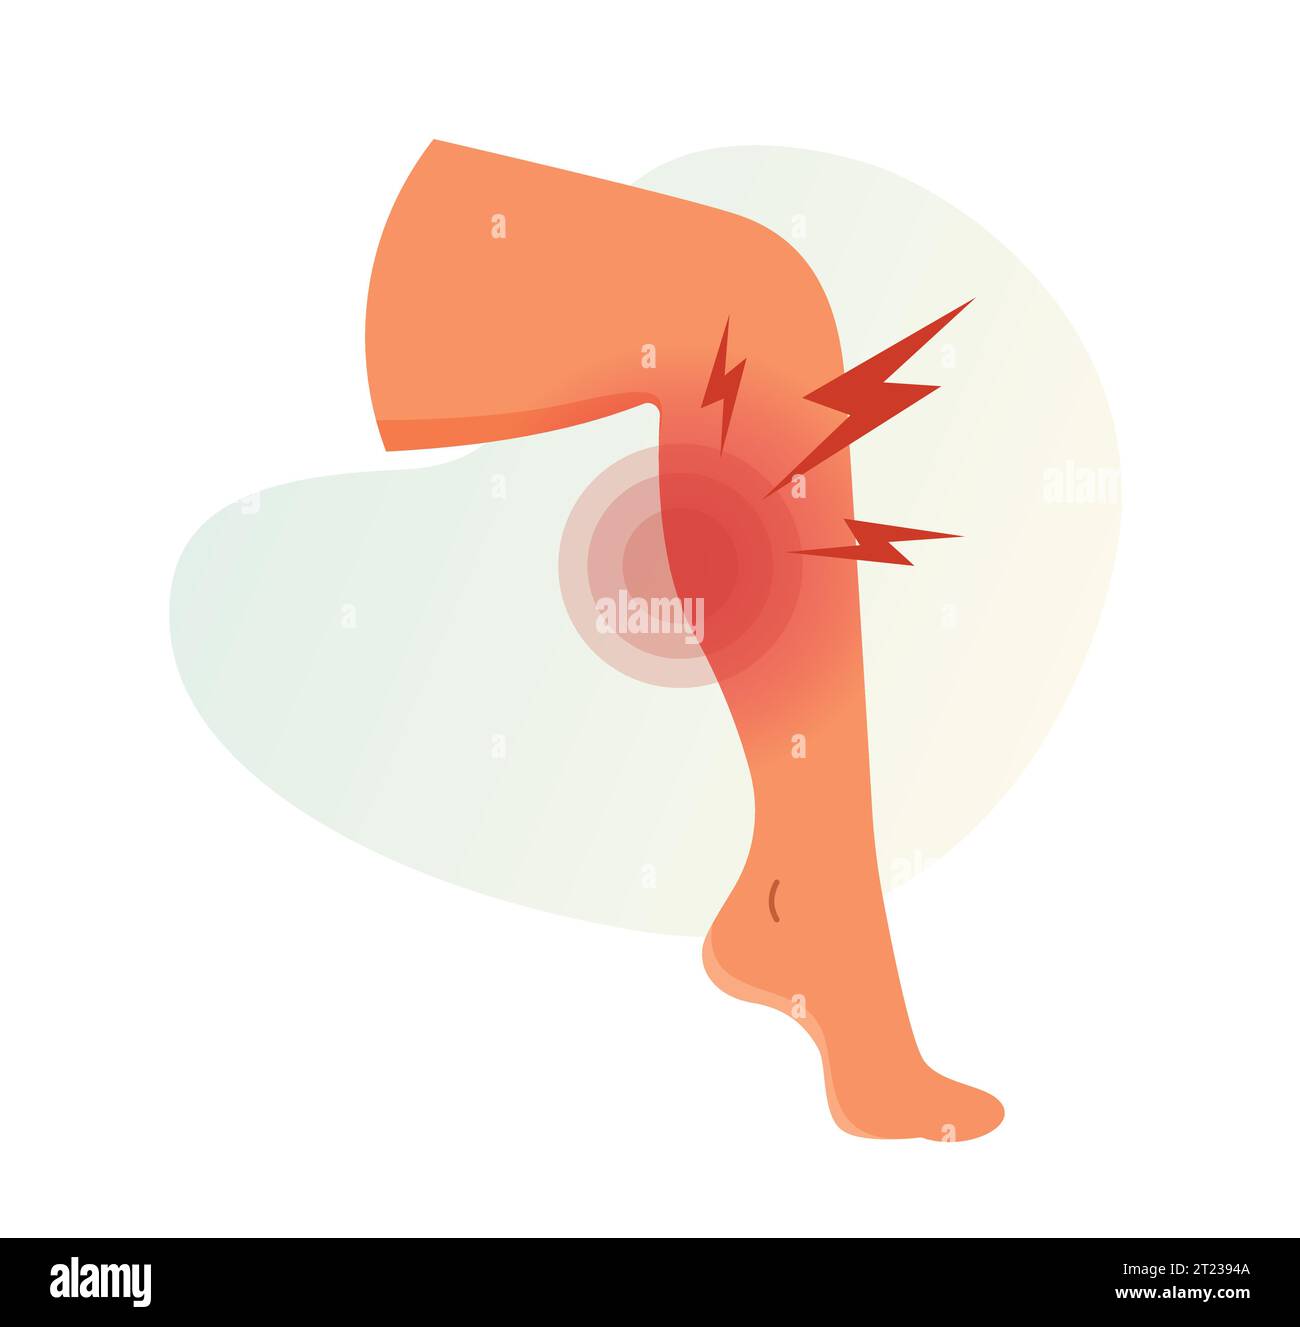 Wadenmuskelschmerzen – Krämpfe – Stock-Illustration als EPS 10 Datei Stock Vektor